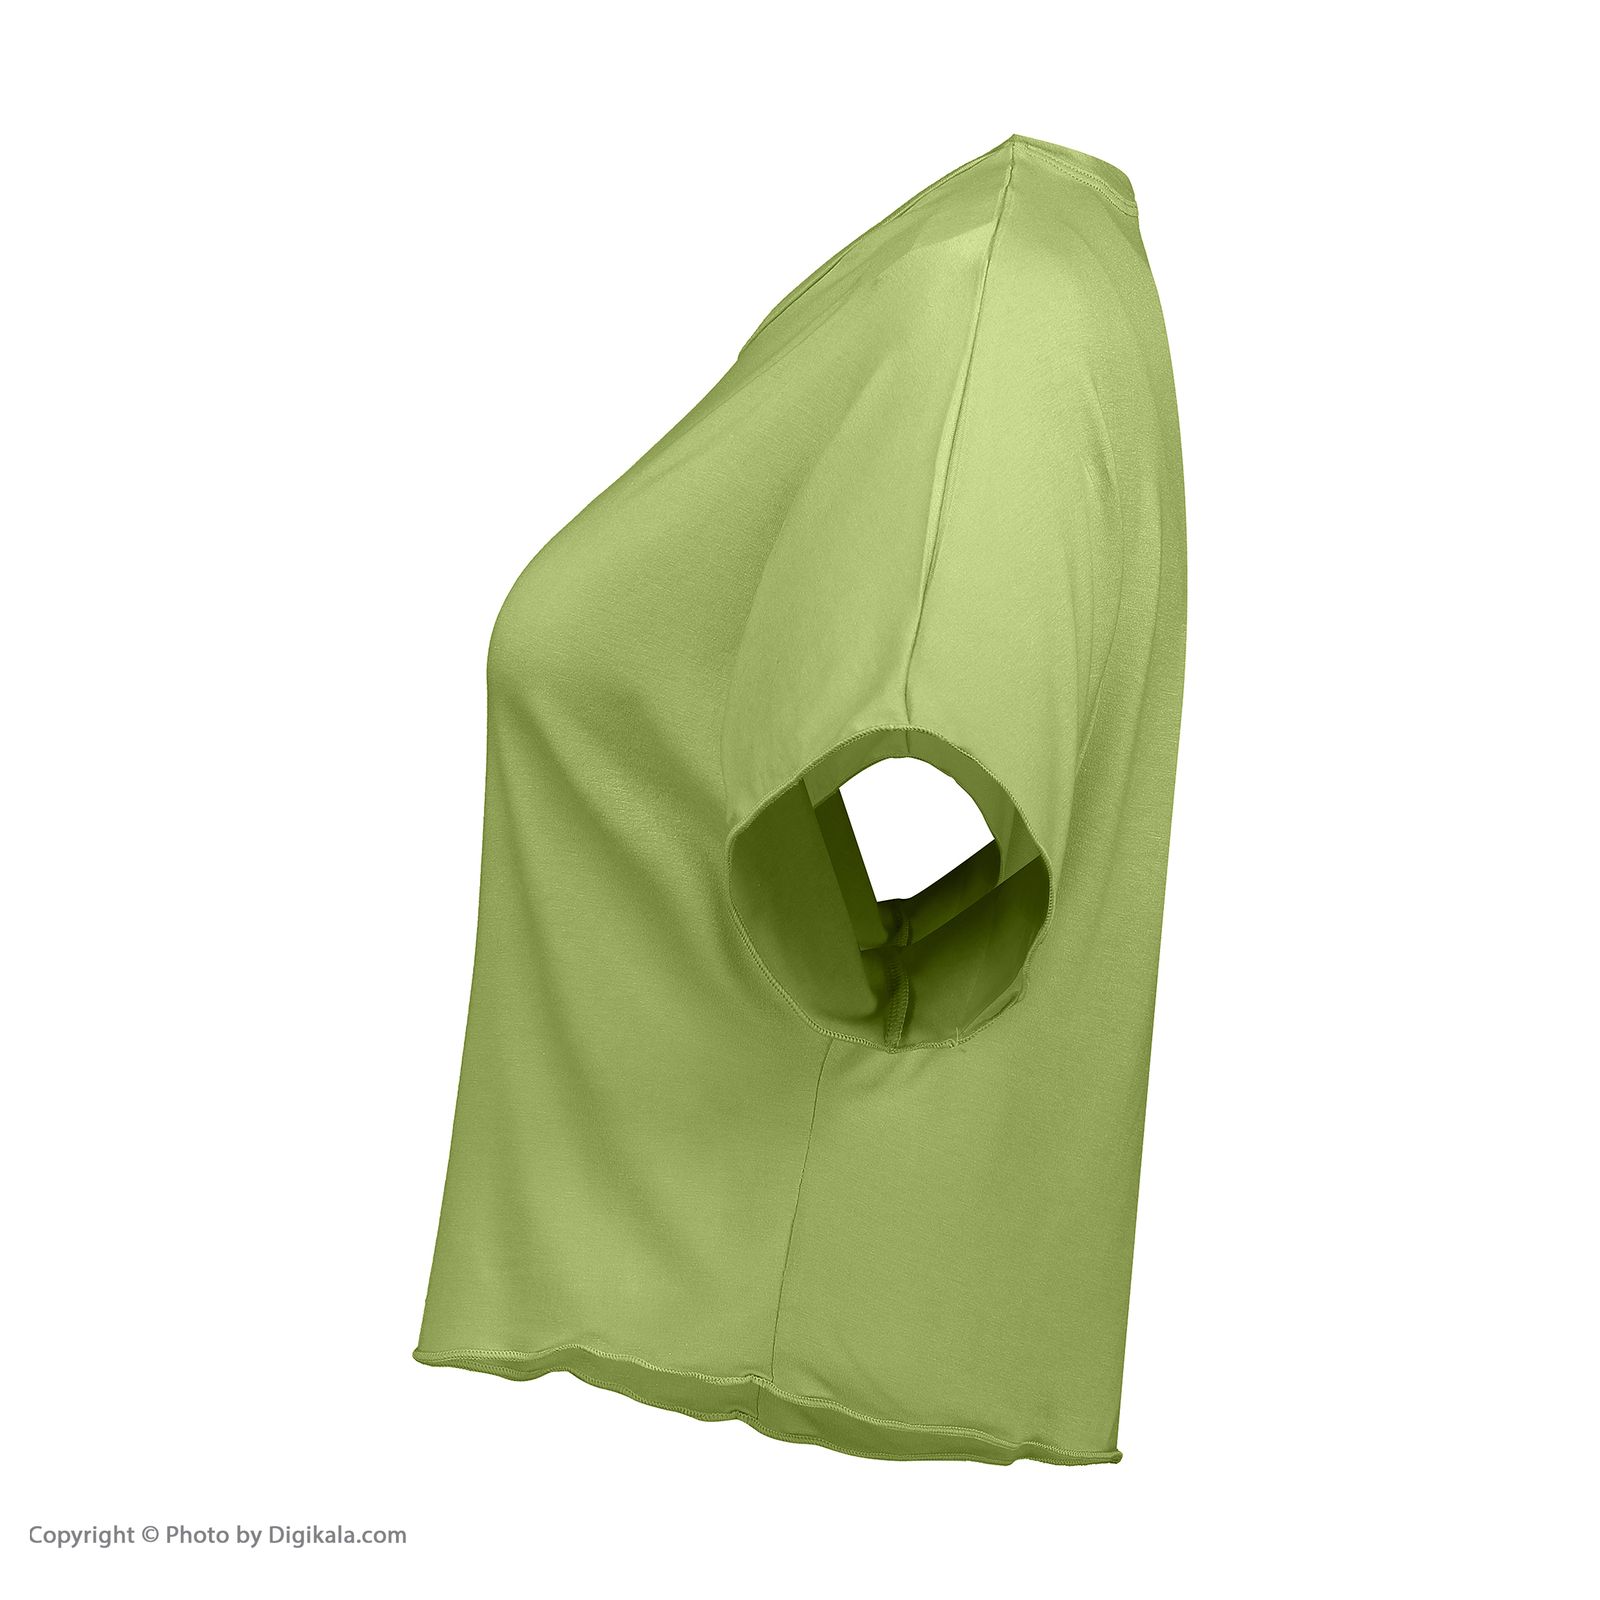 ست تیشرت و شلوارک زنانه افراتین مدل آرام رنگ سبز -  - 4